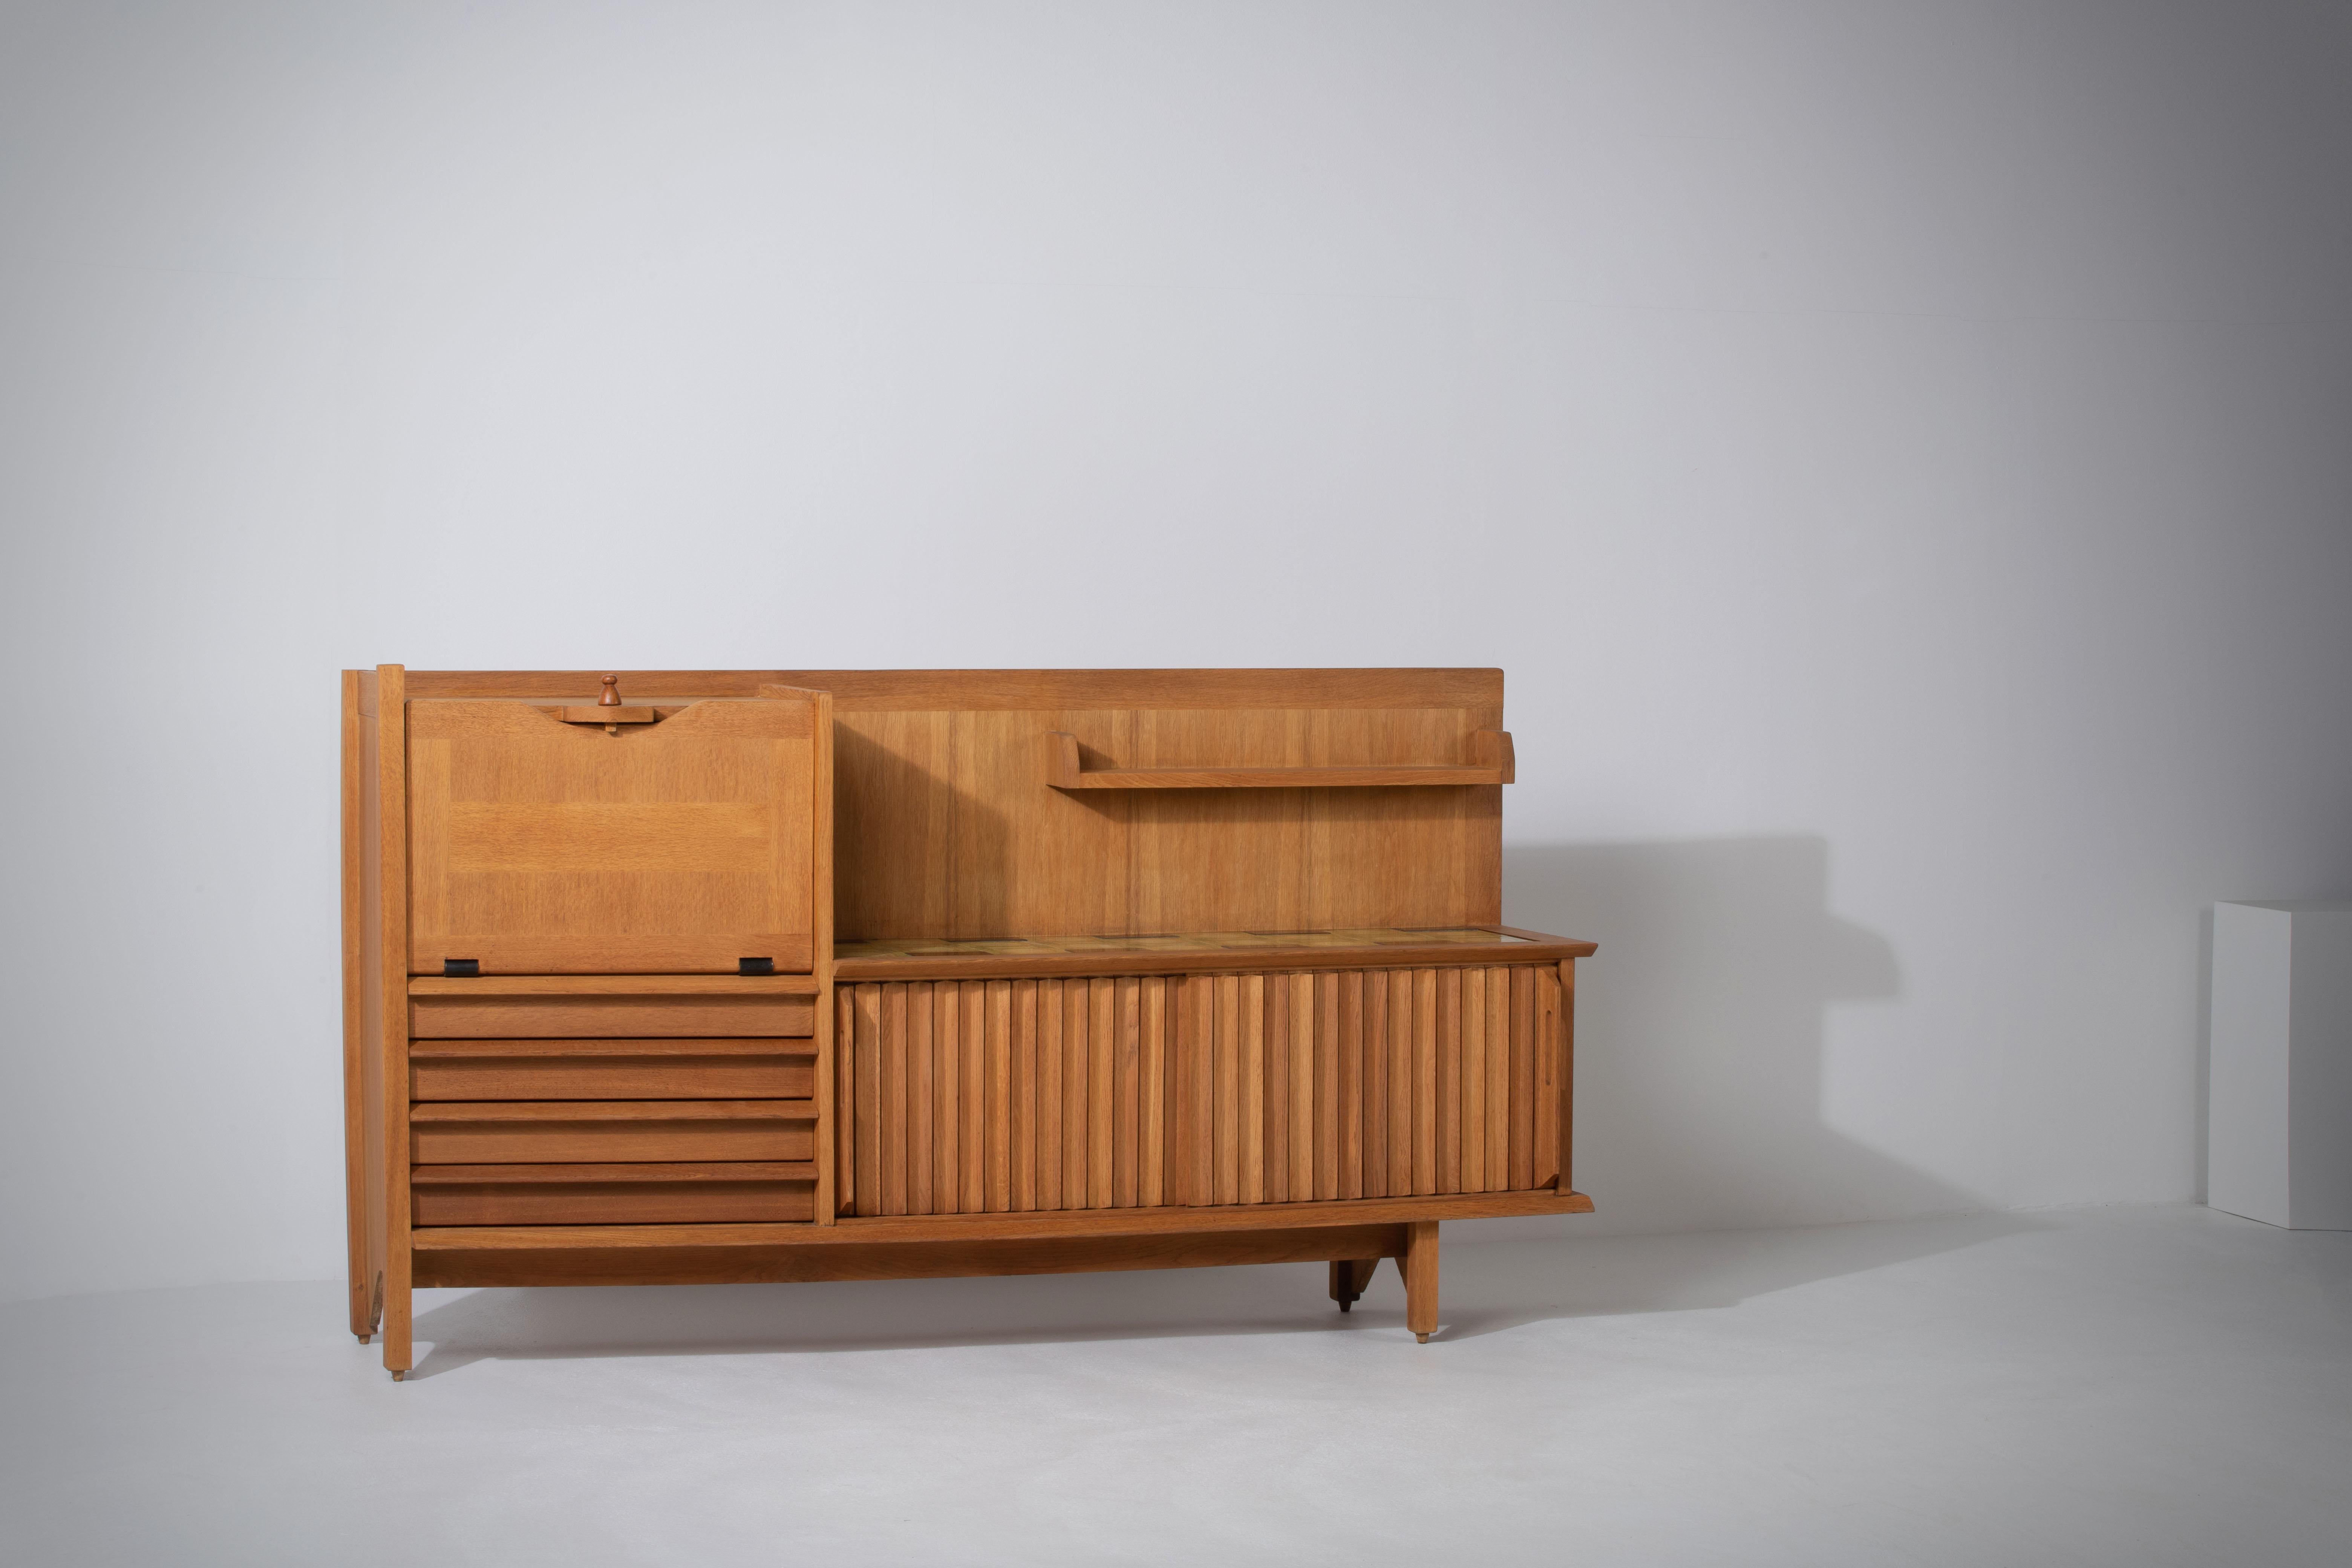 Ce meuble caractéristique, buffet en chêne massif est conçu par le duo de designers français Jacques Chambron (1914-2001) et Robert Guillerme (1913-1990). Il est doté de deux portes coulissantes, d'une porte coulissante sur le côté gauche et de